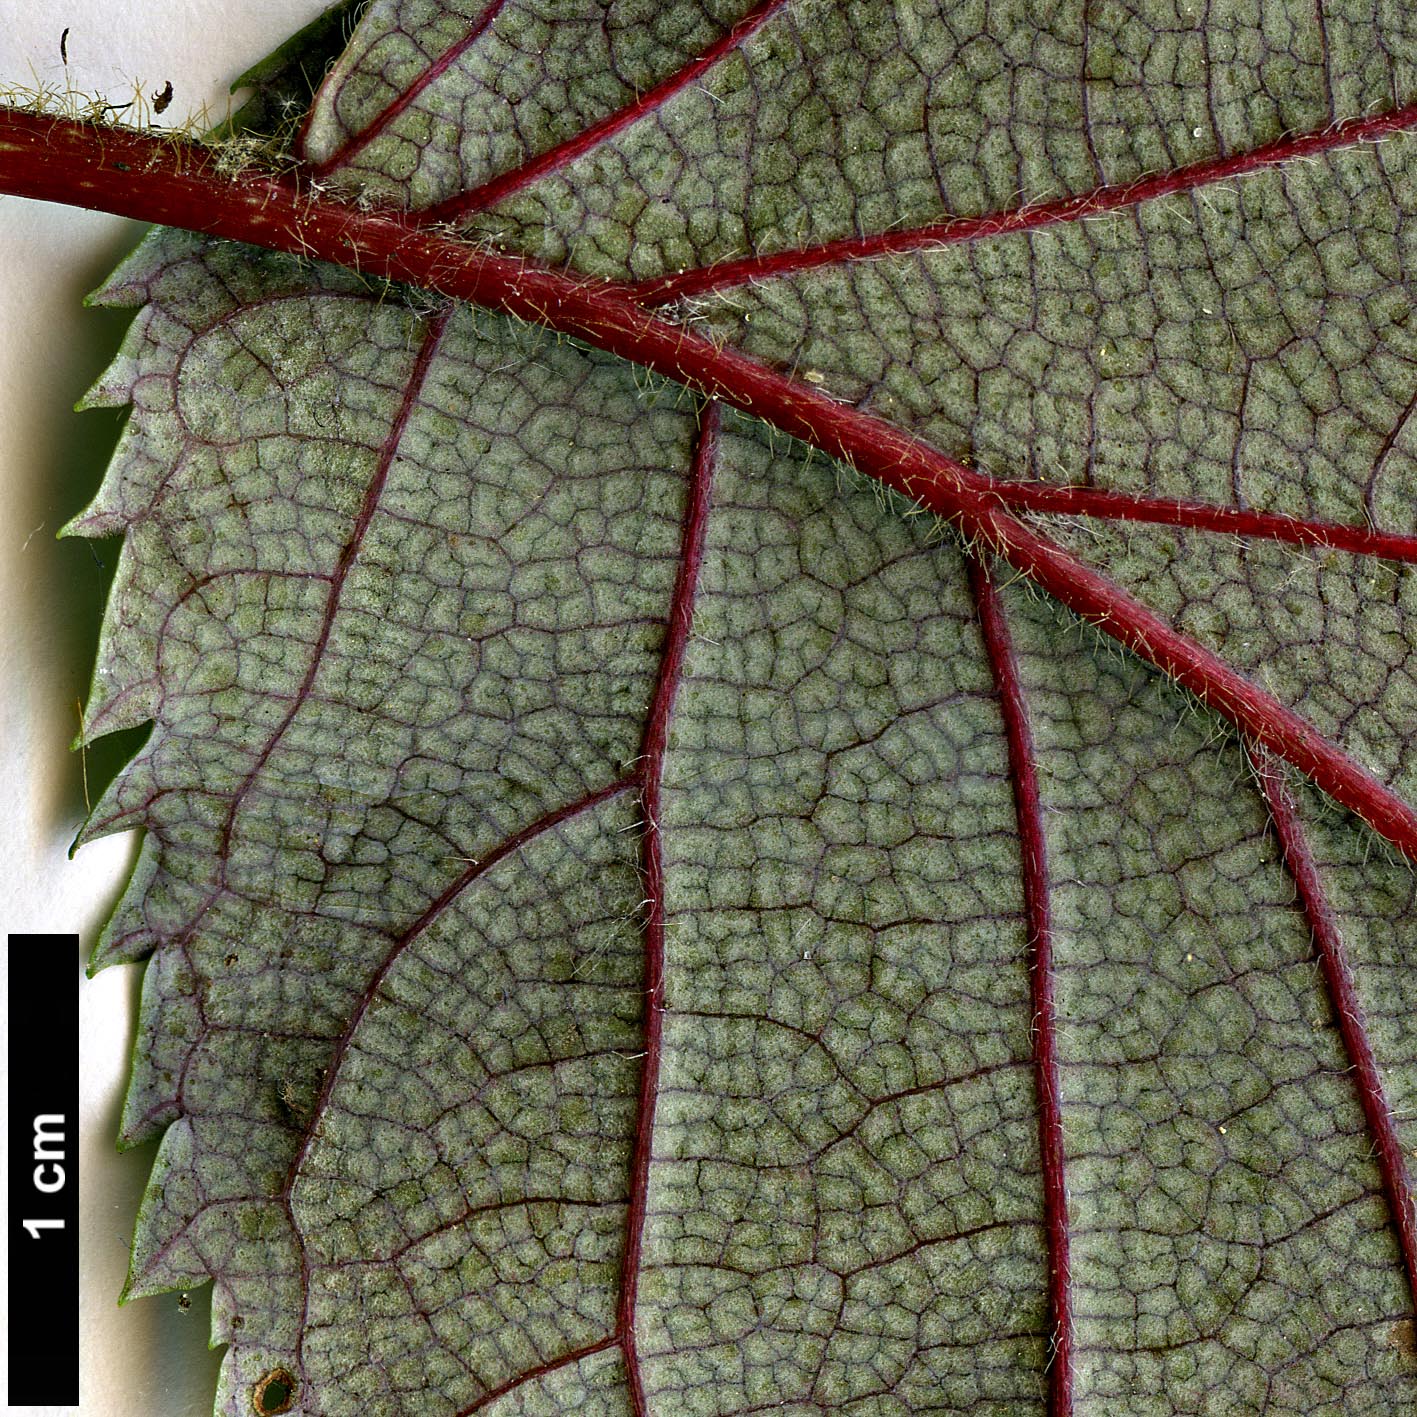 High resolution image: Family: Hydrangeaceae - Genus: Hydrangea - Taxon: anomala - SpeciesSub: subsp. petiolaris